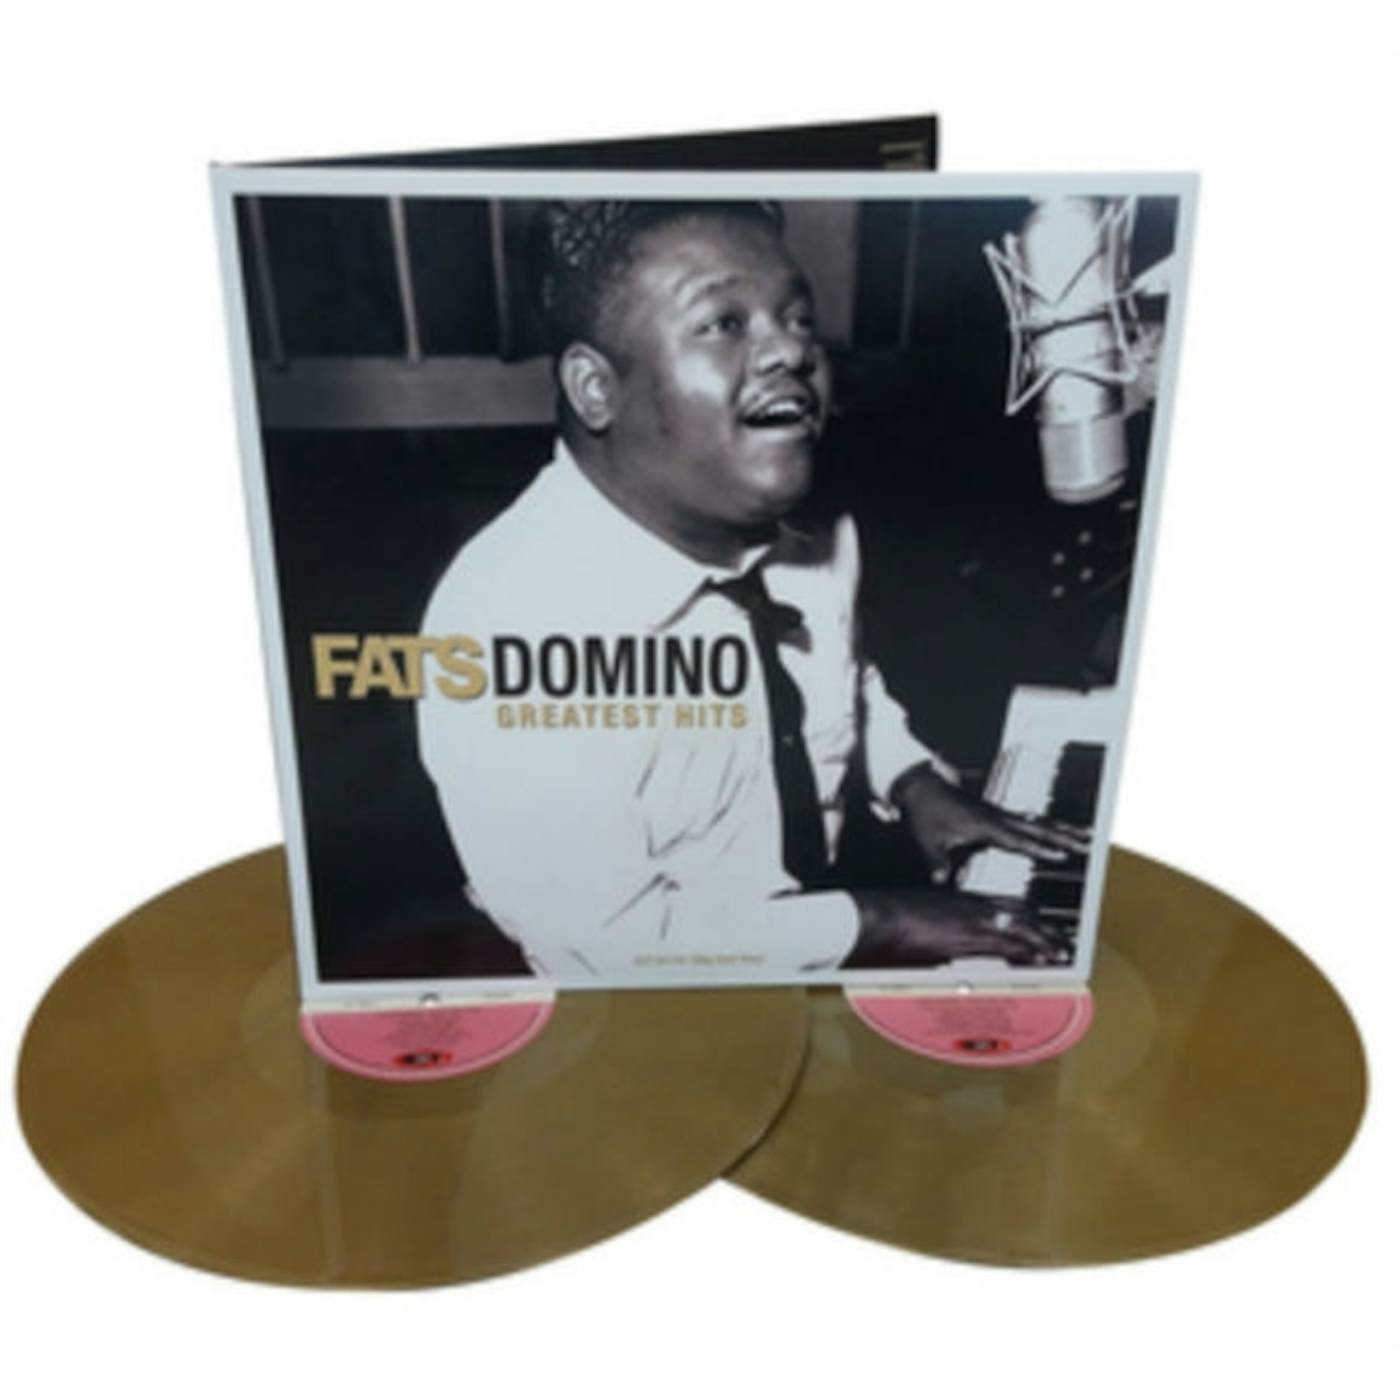 Fats Domino LP - The Very Best Of (Vinyl)